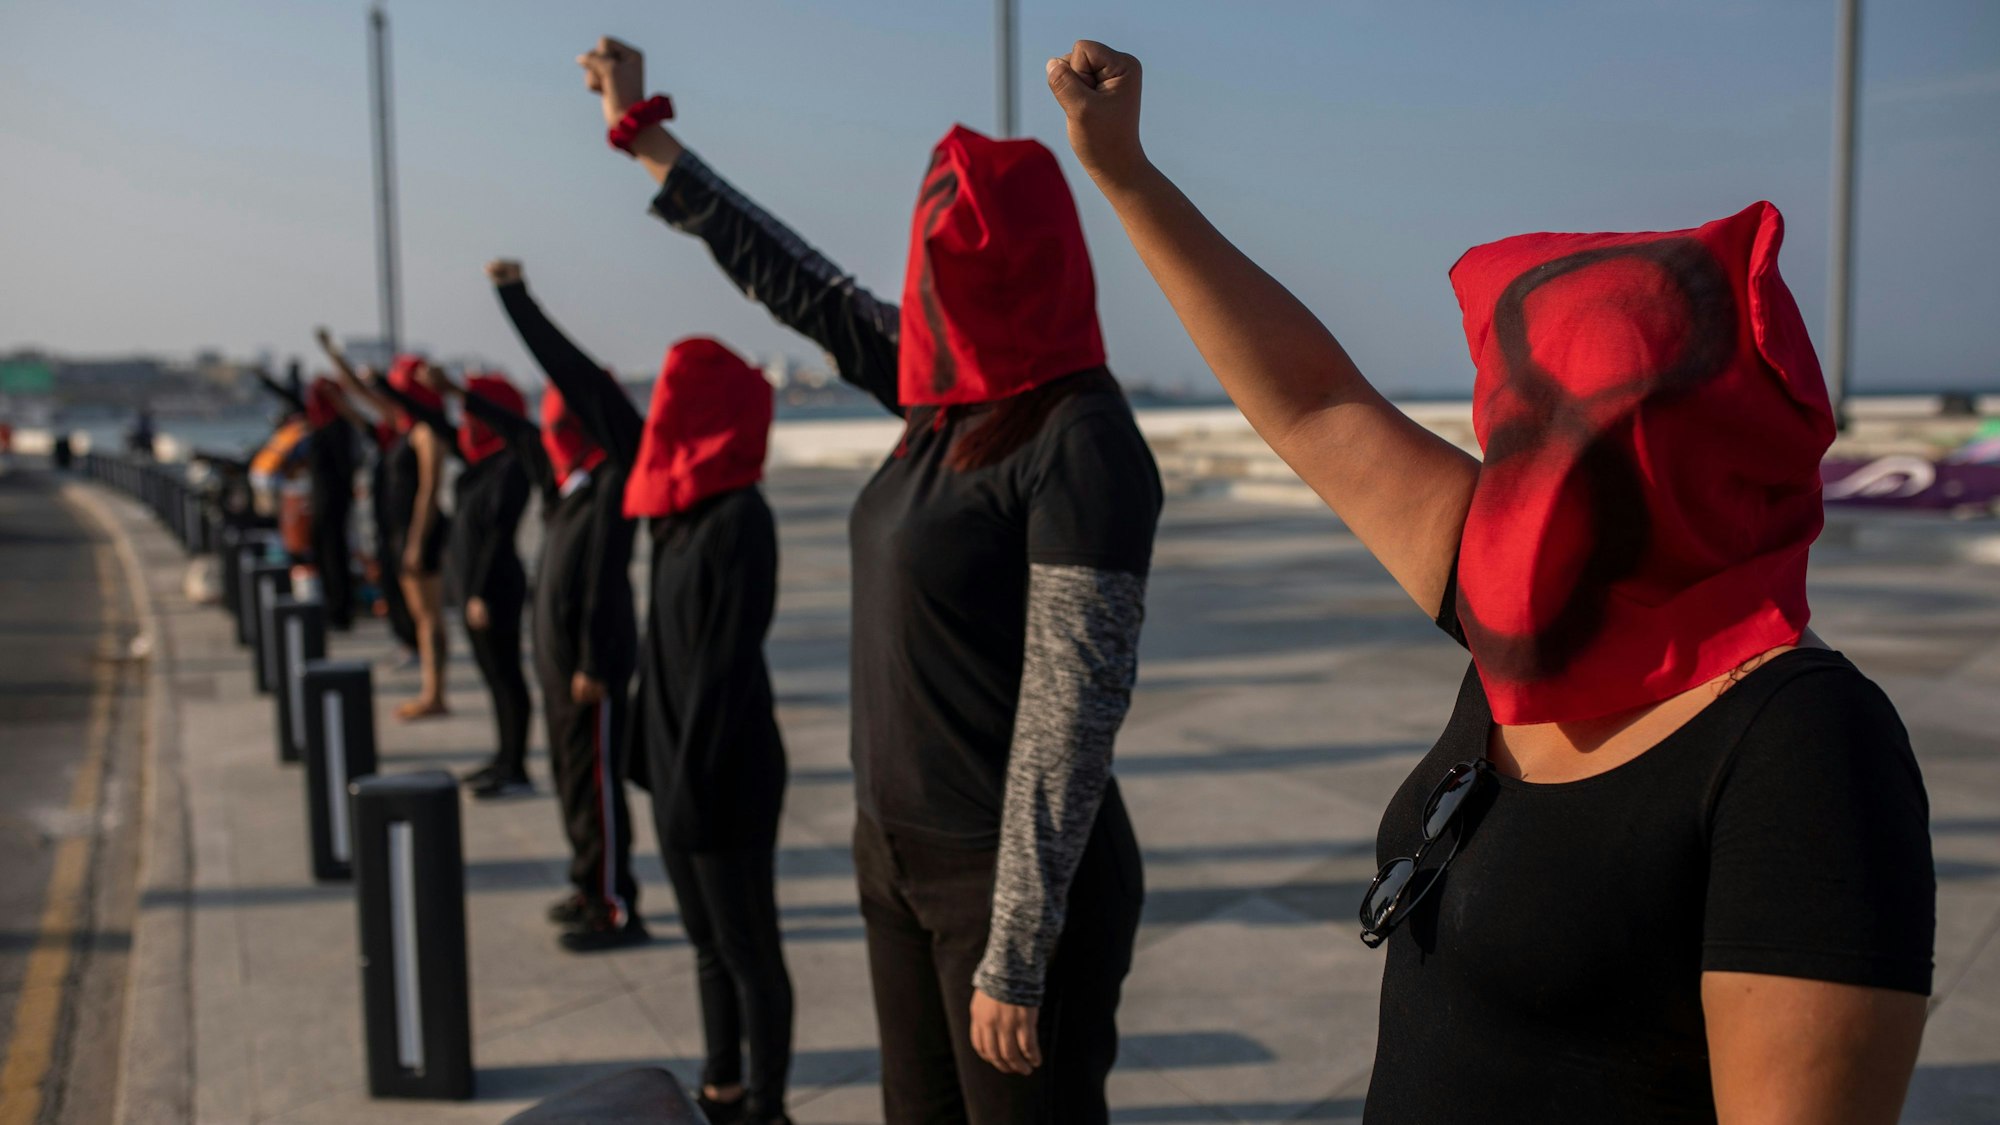 07.03.2023, Mexiko, Veracruz: Die Frauen des Kollektivs "Rabia" protestieren mit einer künstlerischen Performance gegen die 11 Frauenmorde, die täglich in Mexiko registriert werden am Internationalen Tag der Frau.